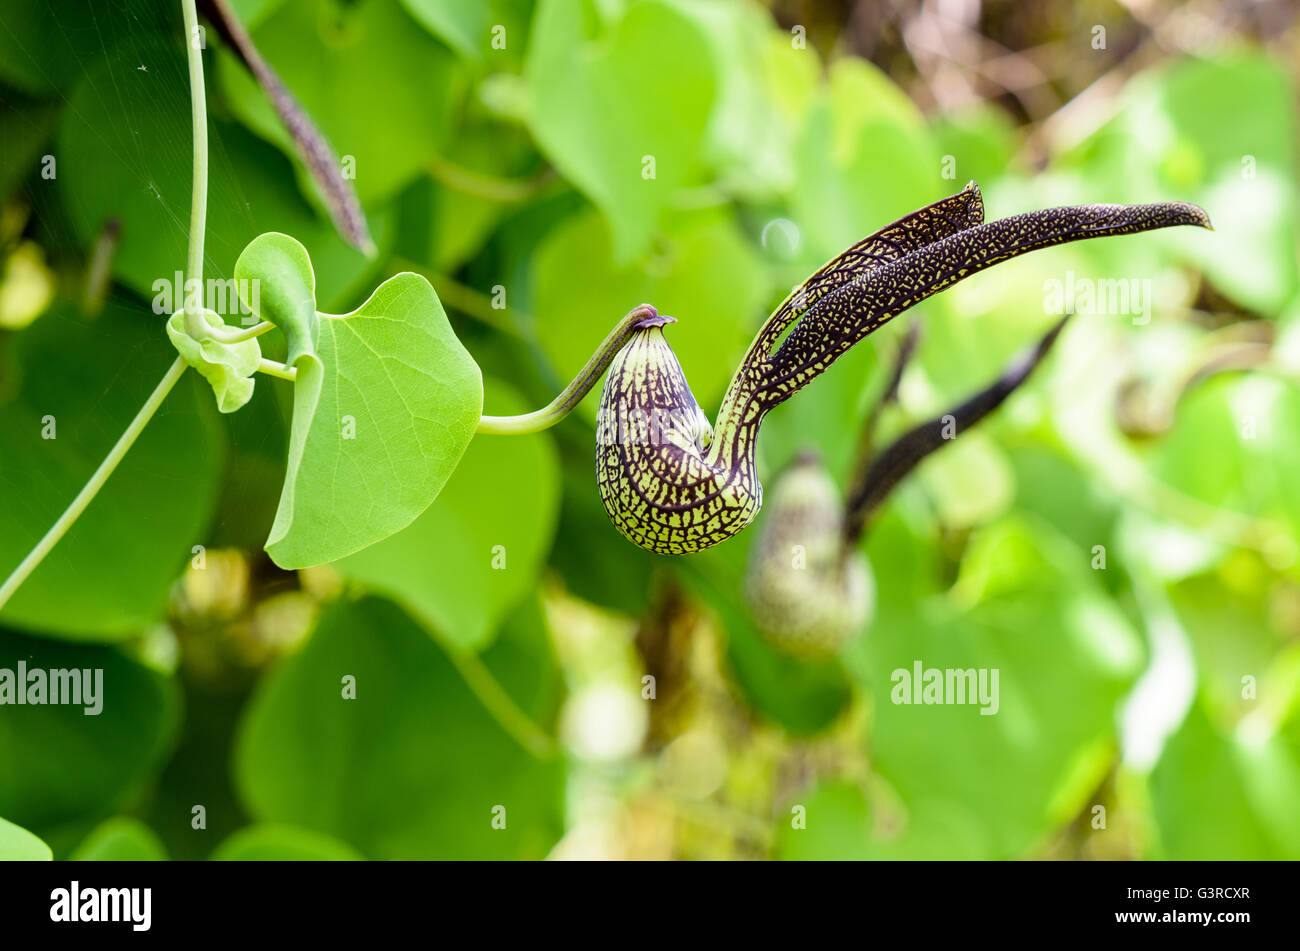 Vert noir à rayures de fleurs exotiques en forme de poulet. C'est une plante d'ornement nom est Aristolochia ringens Vahl ou Dutchman Banque D'Images